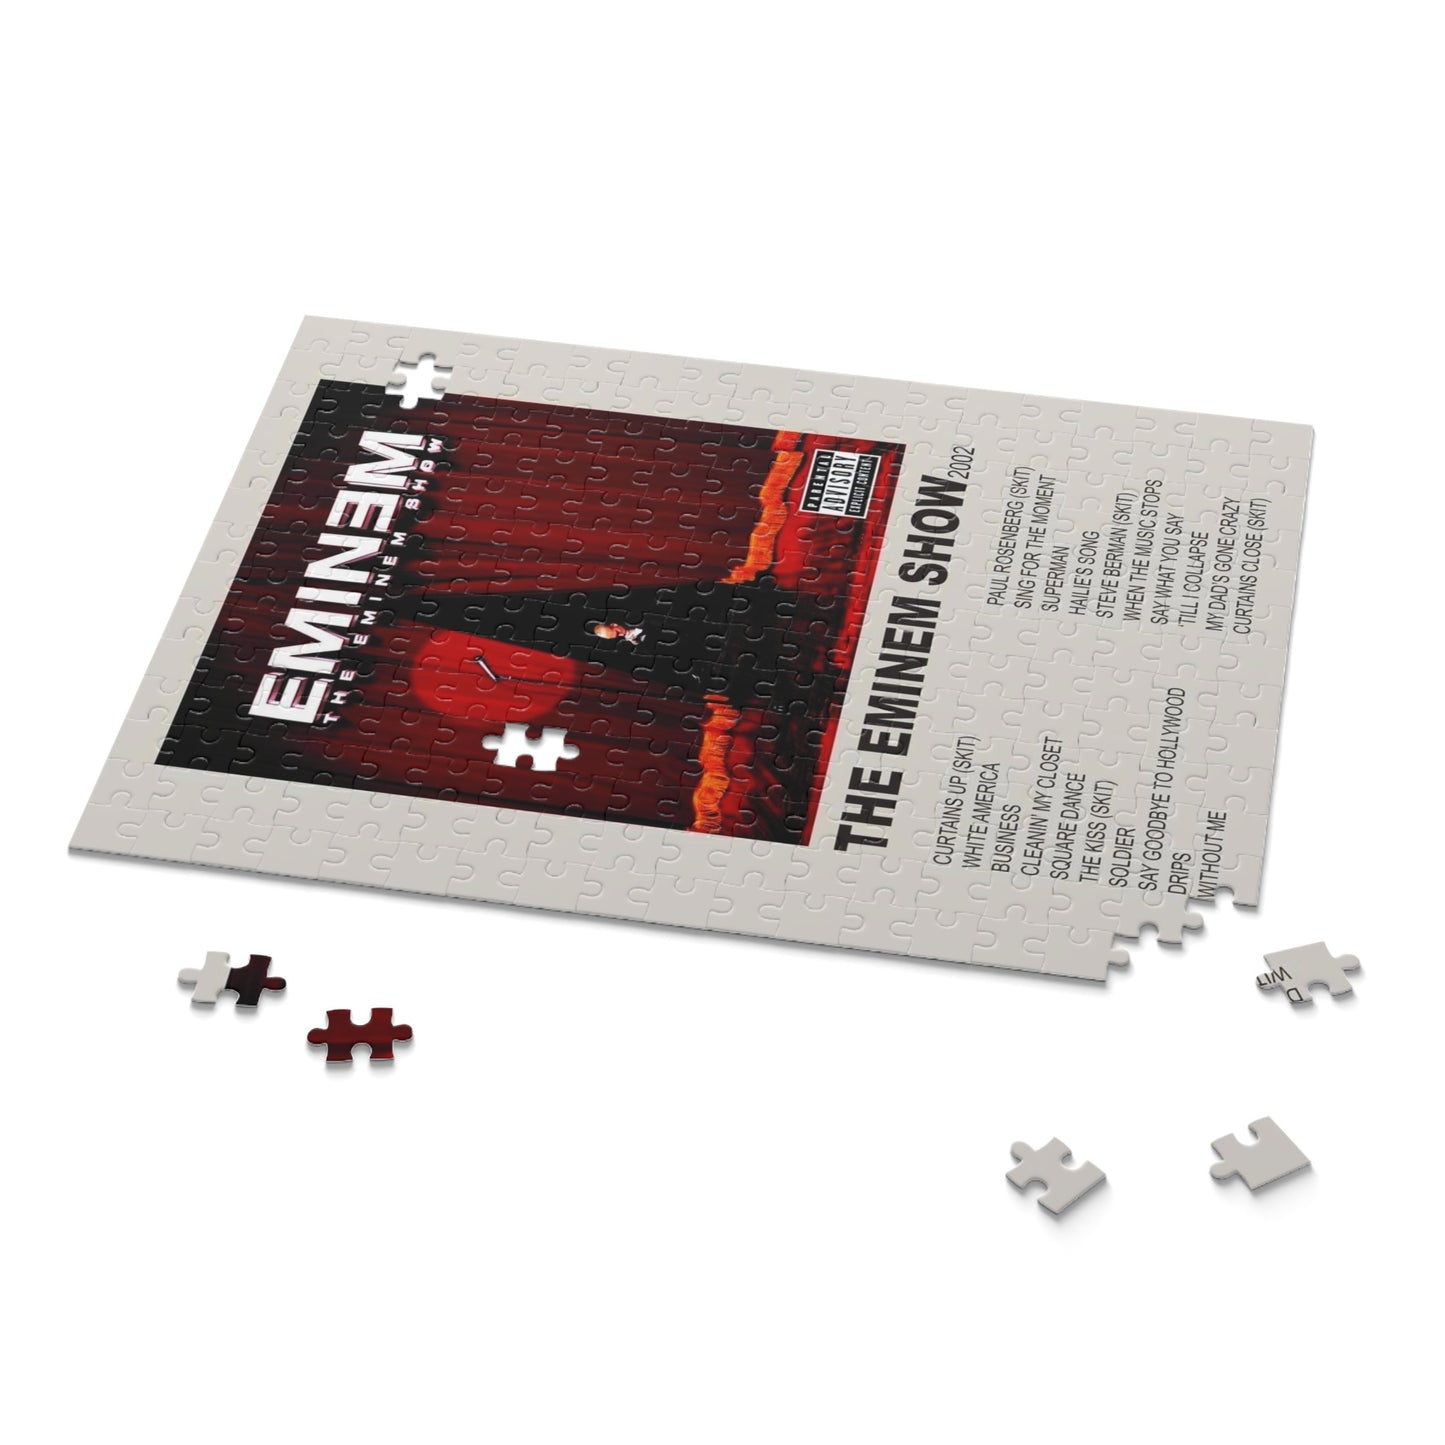 "The Eminem Show" Album Puzzle (Eminem)